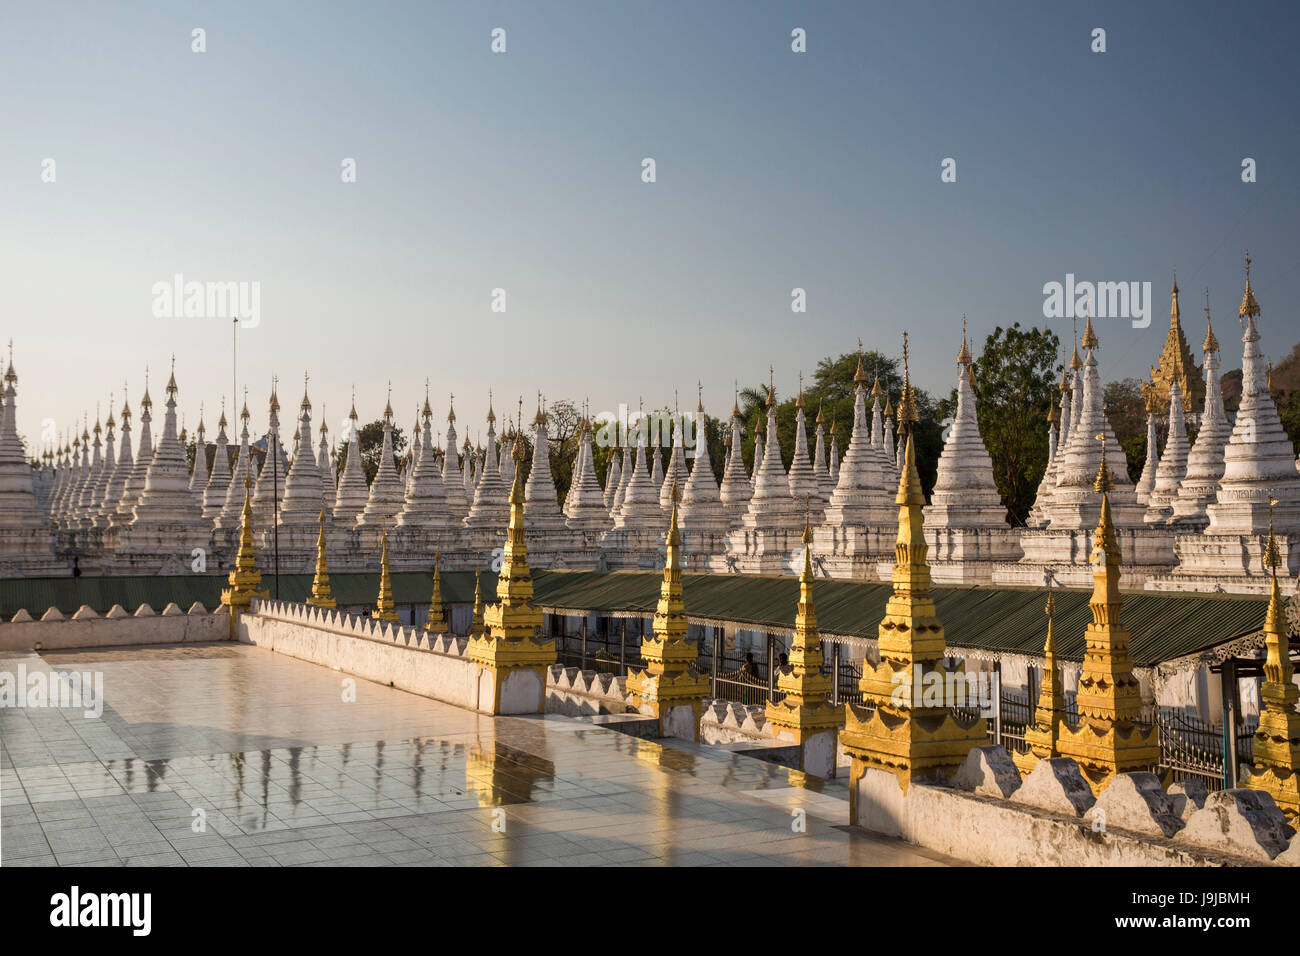 Myanmar Mandalay City, Kuthodaw Pagoda Foto Stock